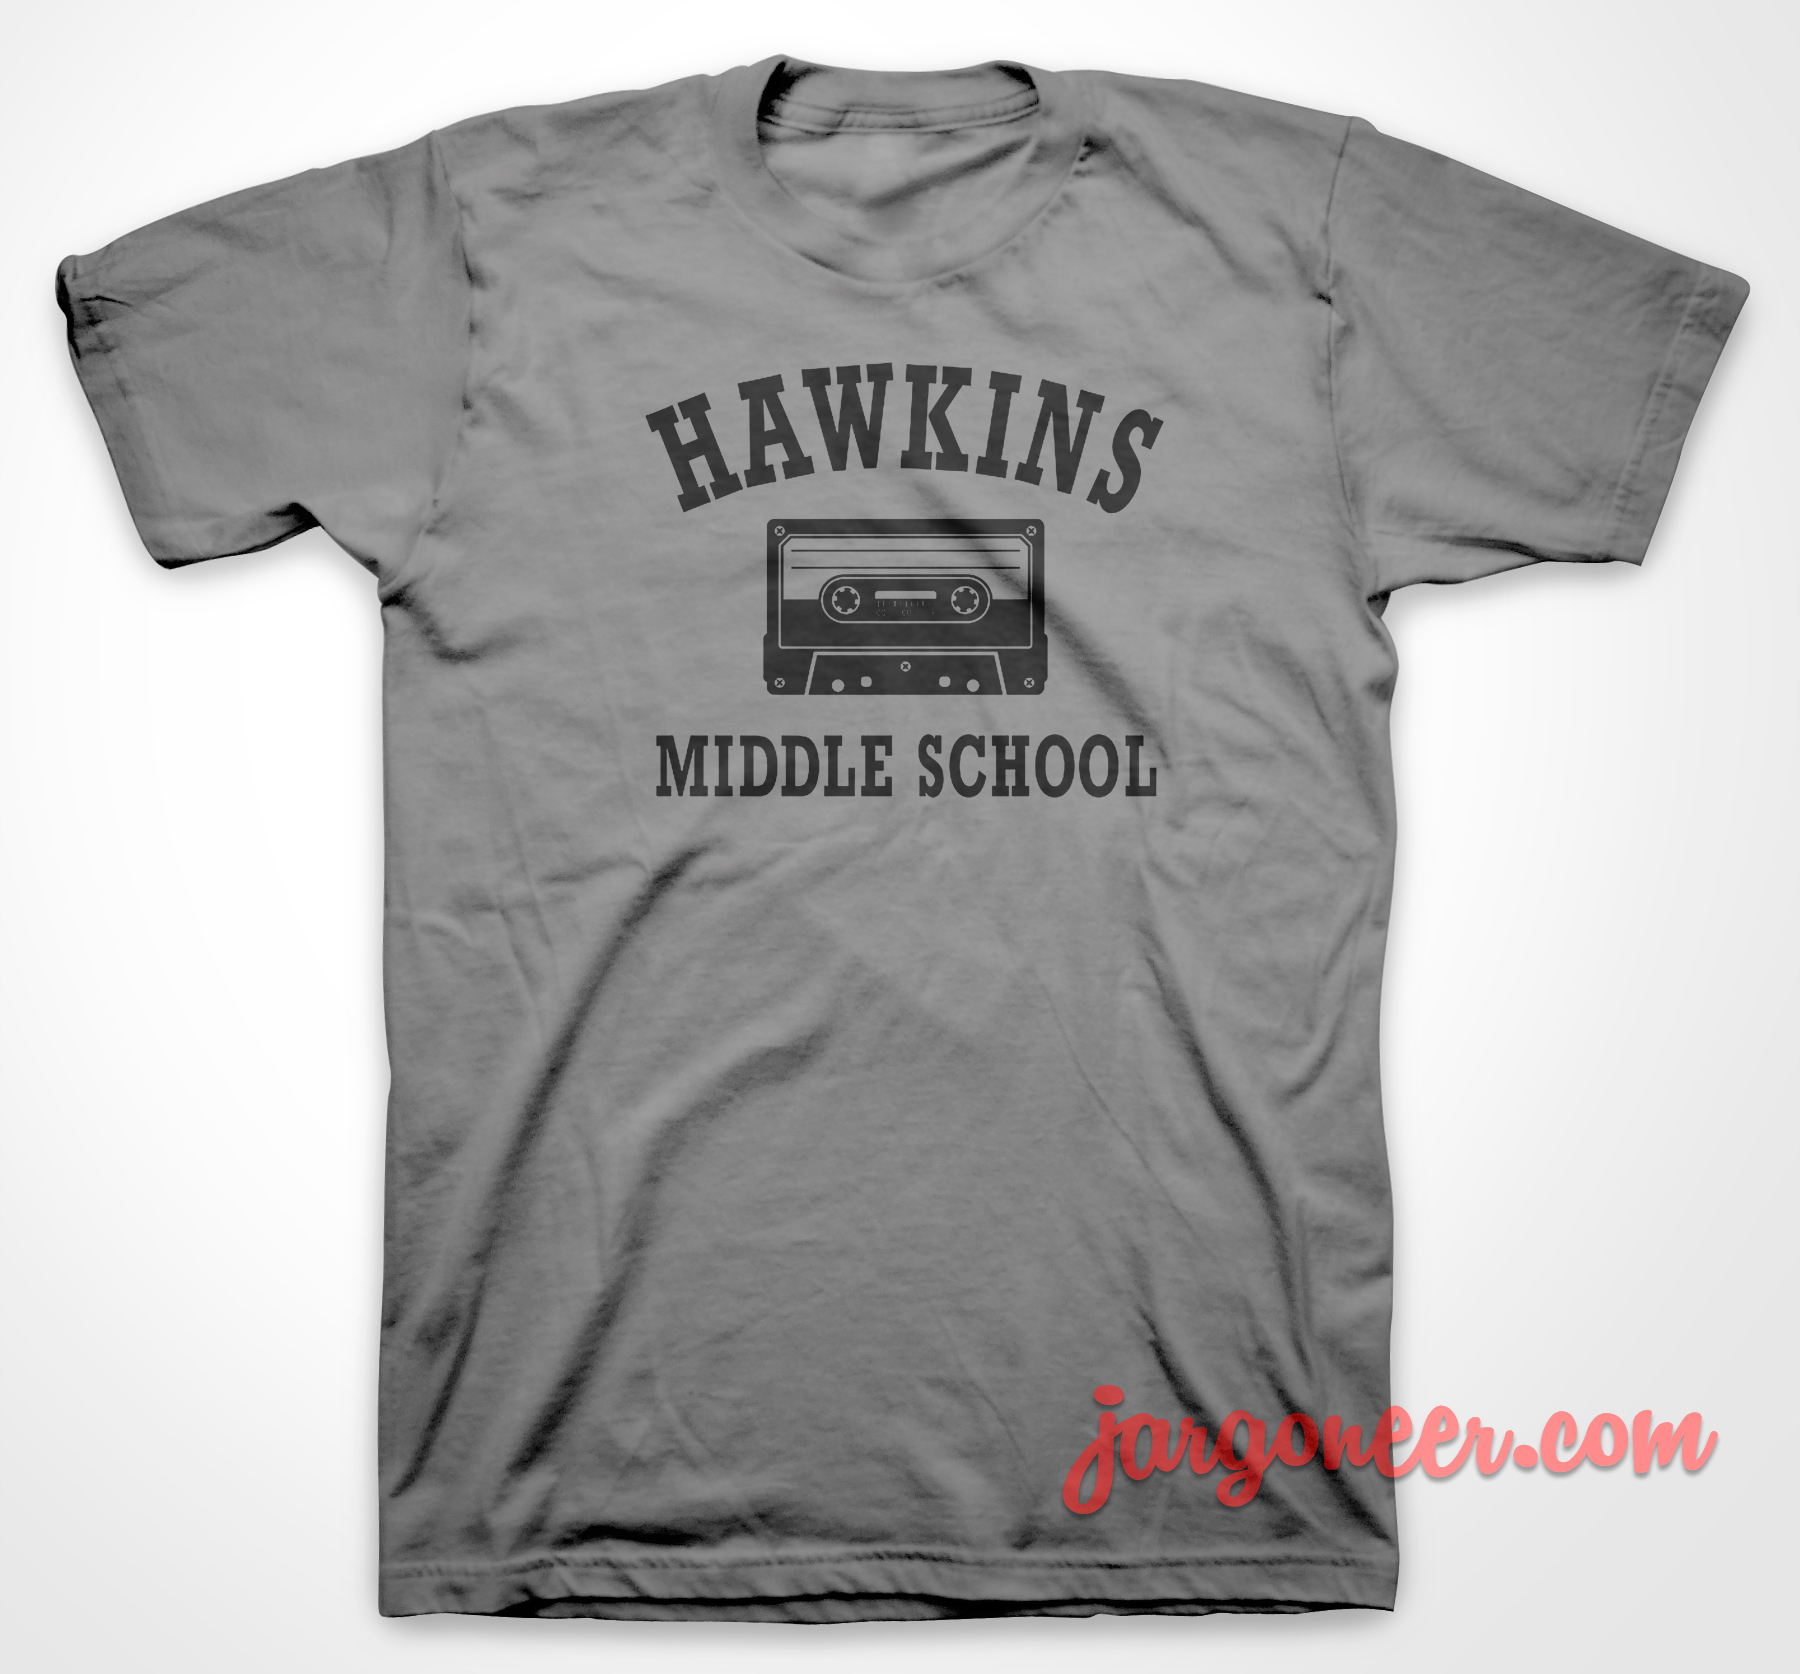 Hawkins Middle School - Shop Unique Graphic Cool Shirt Designs